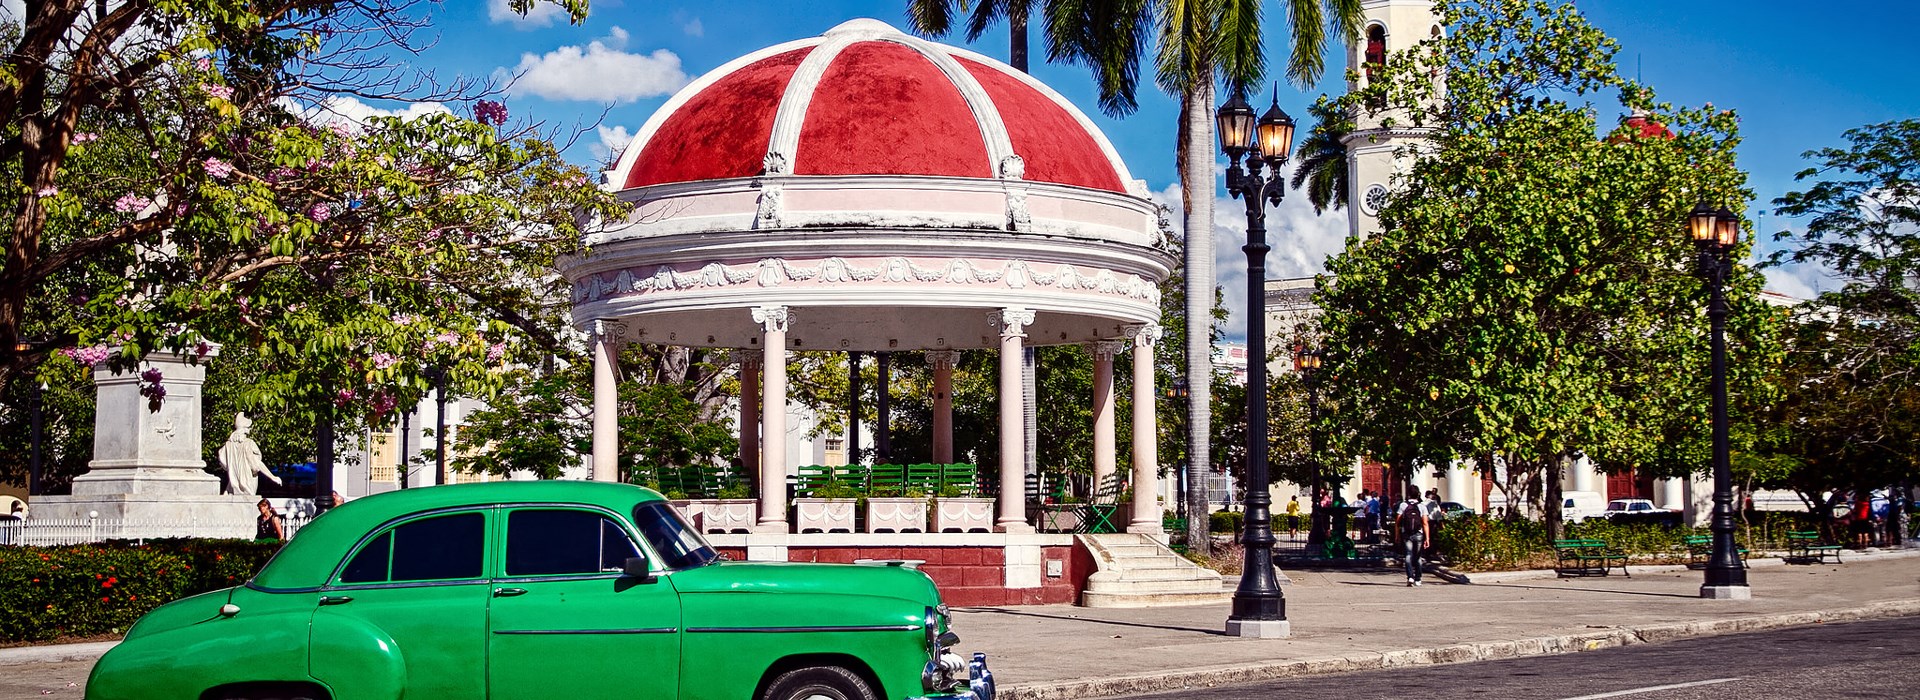 Visiter Cienfuegos - Cuba